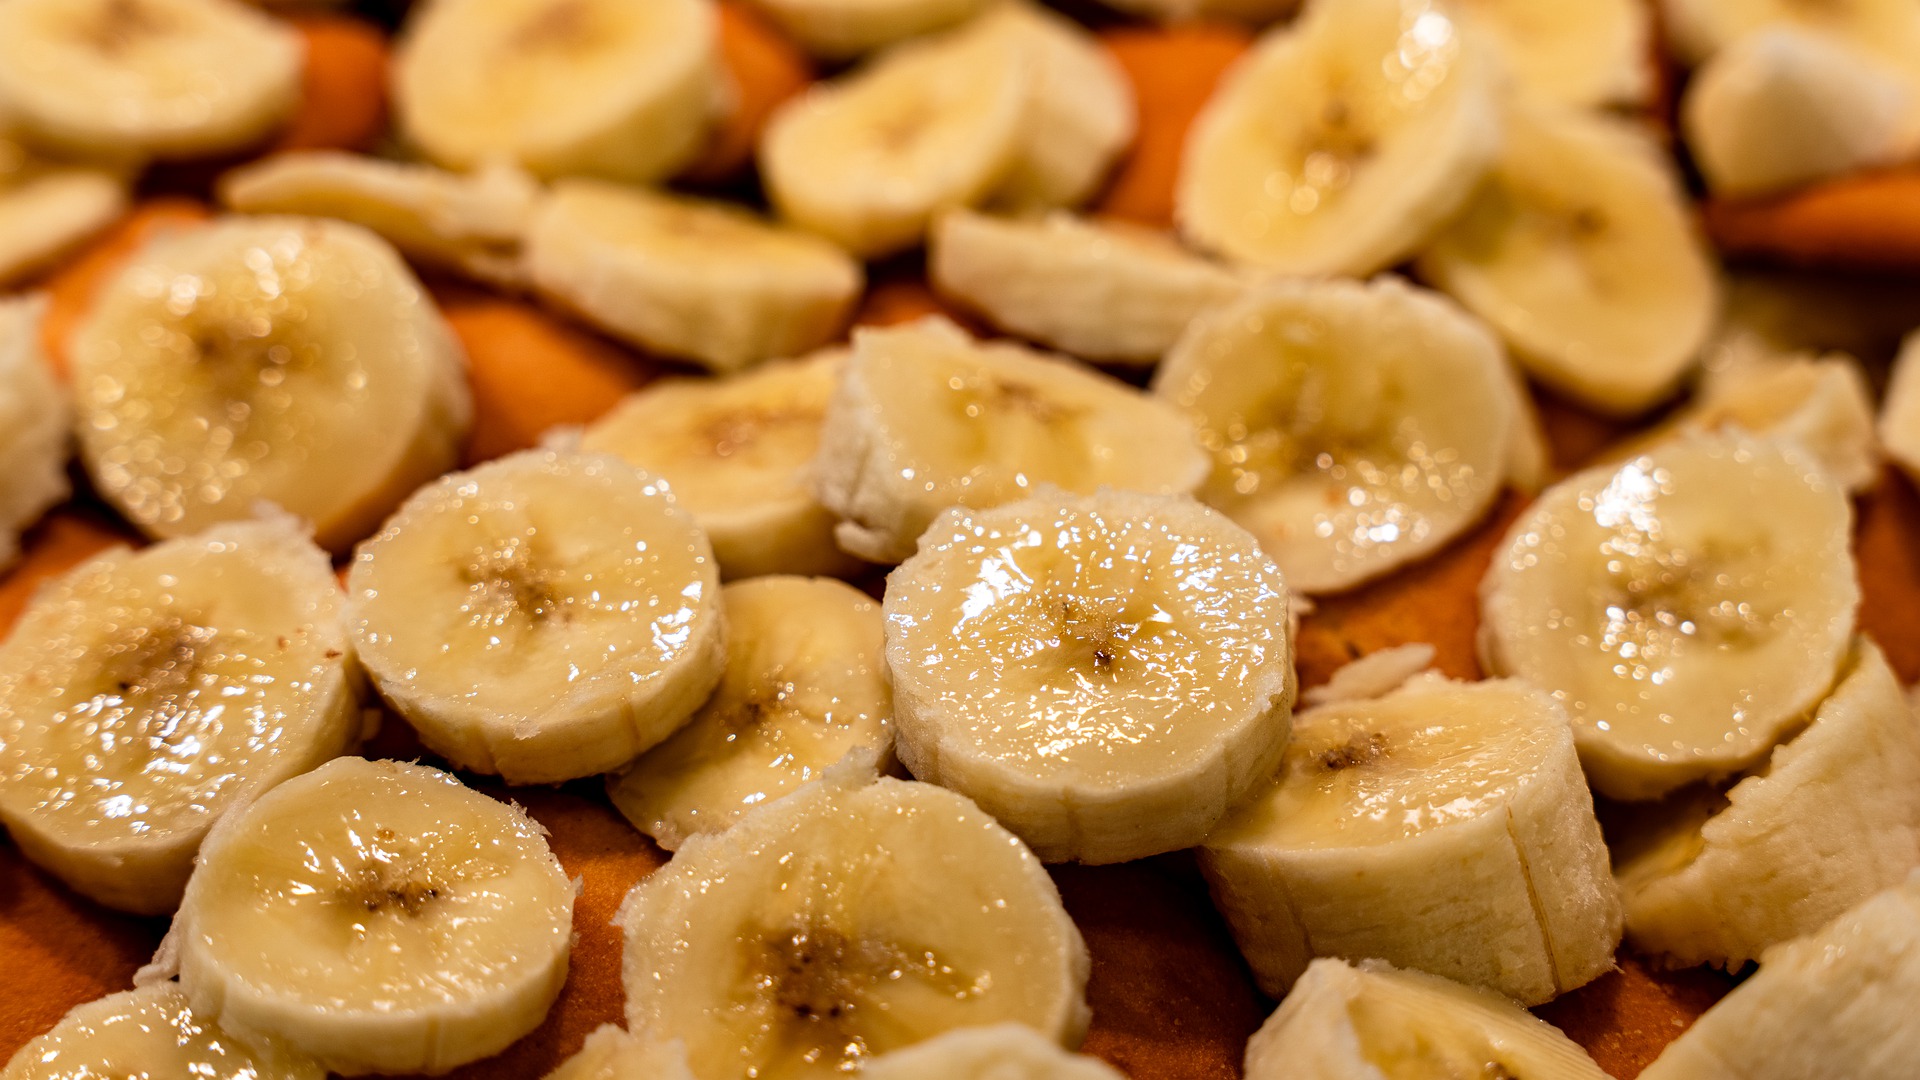 Μπανάνα γλυκά: 2 νόστιμες & υγιεινές συνταγές για επιδόρπια με μπανάνα